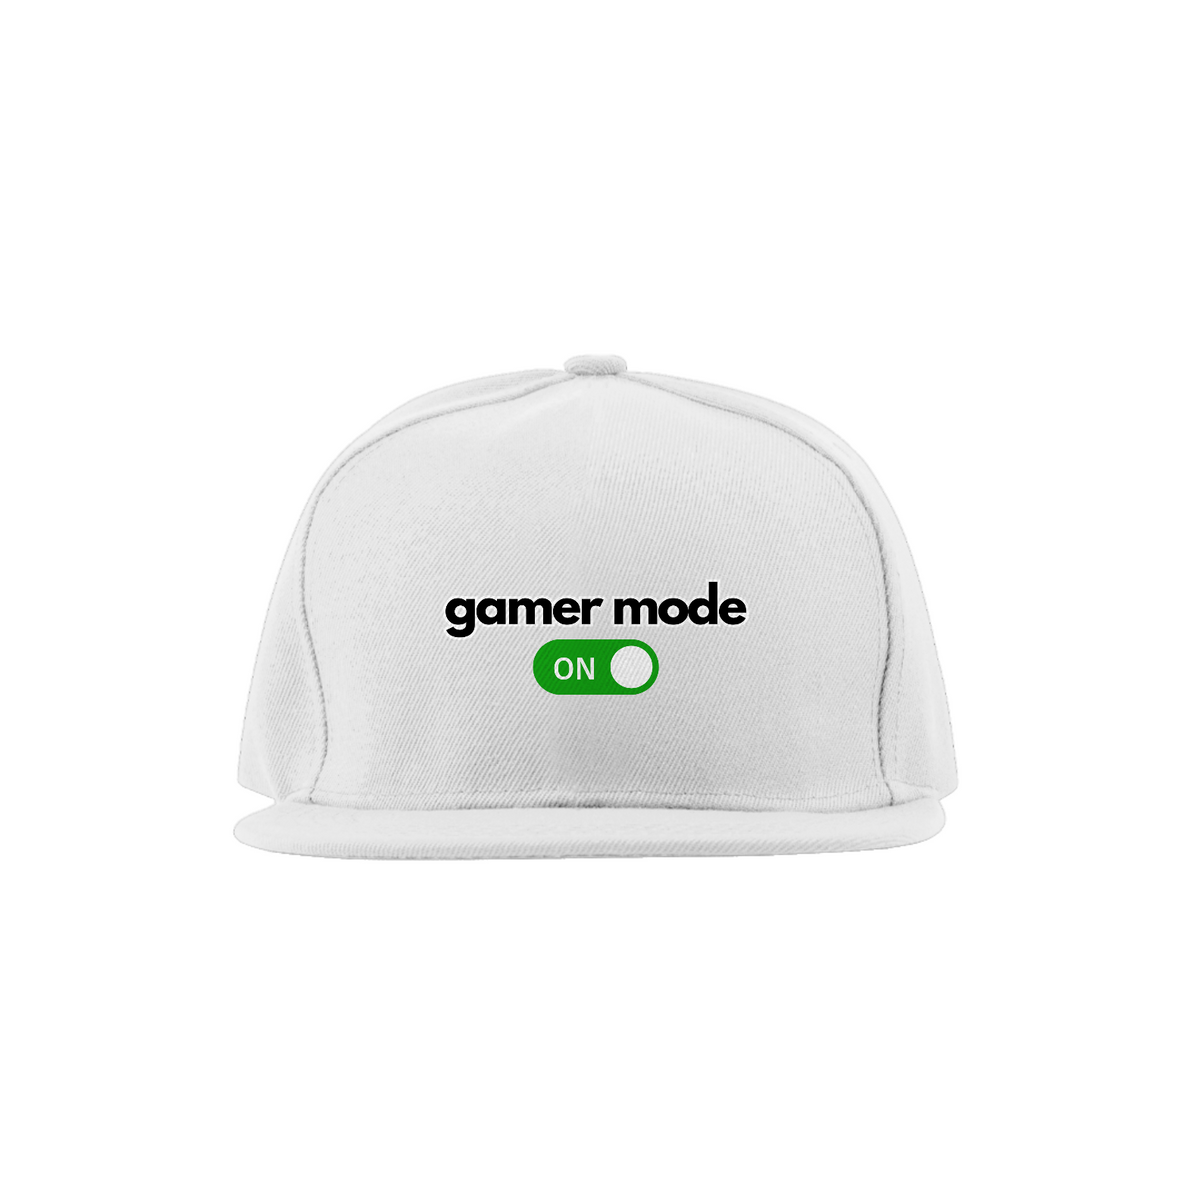 Nome do produto: Gamer mode